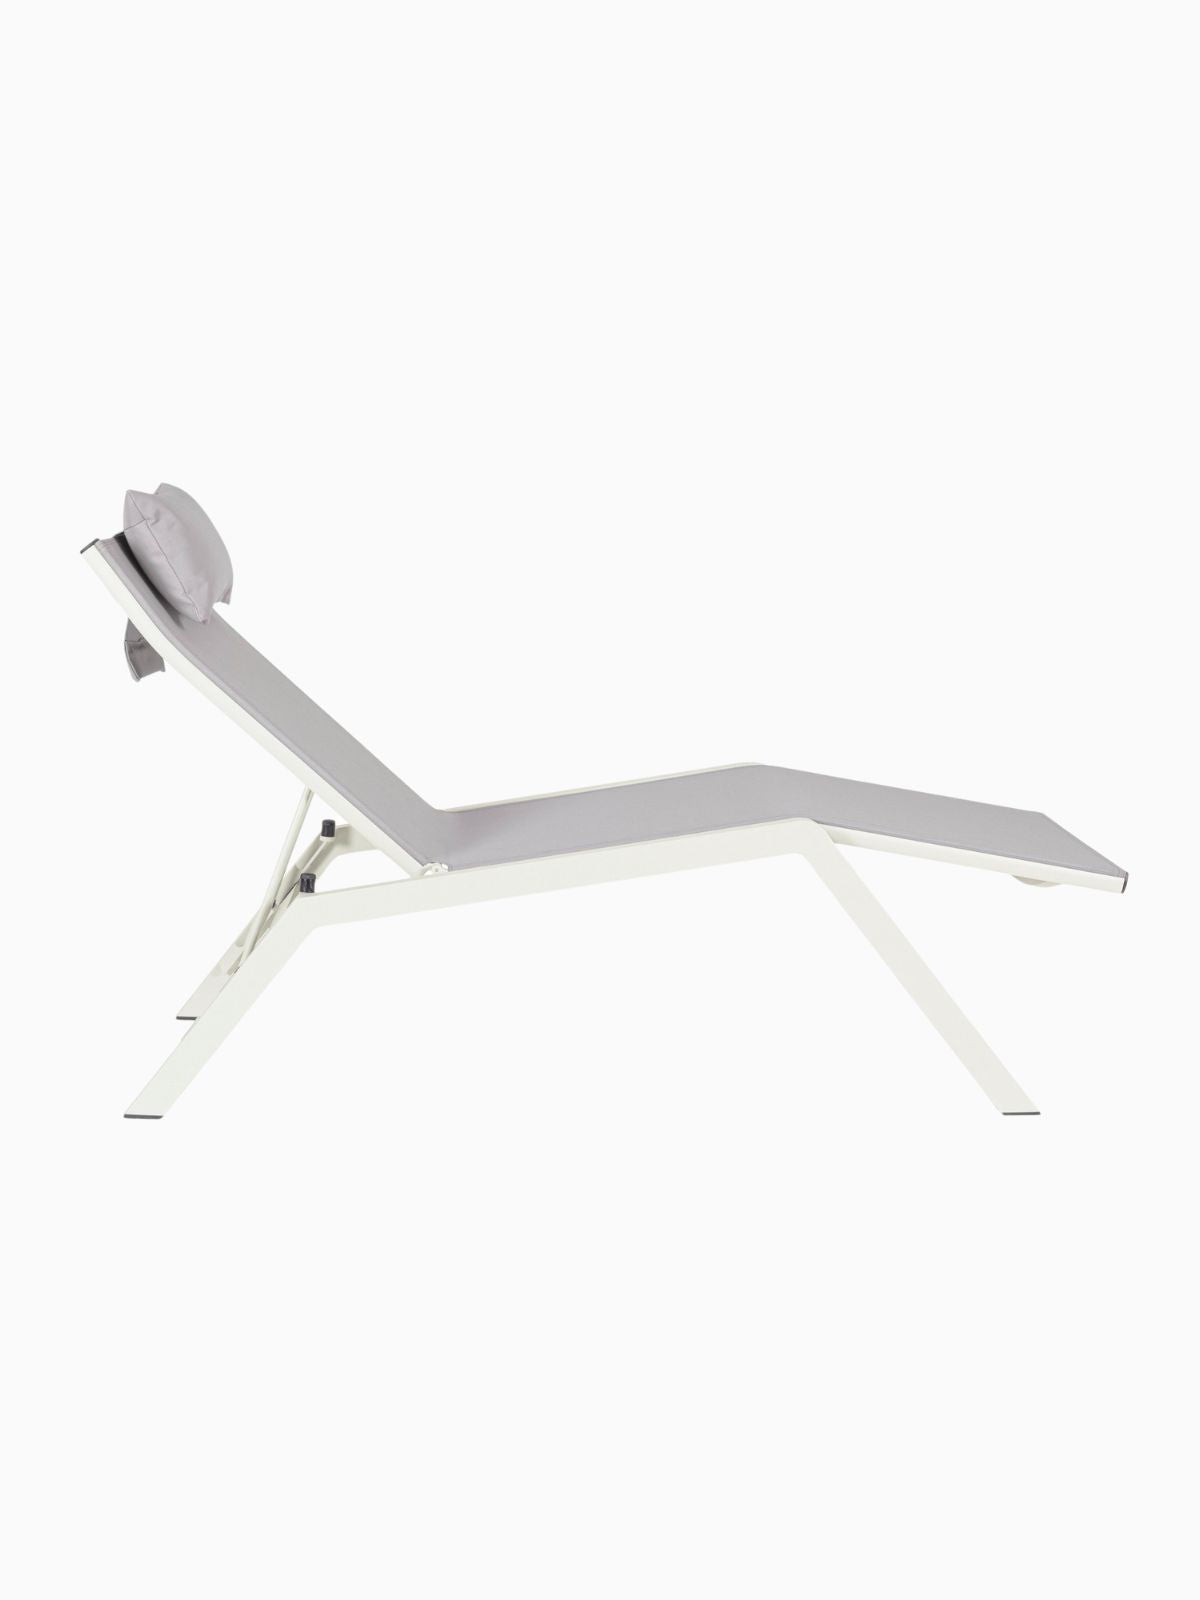 Chaise longue da esterno Krion in alluminio, colore grigio chiaro-2